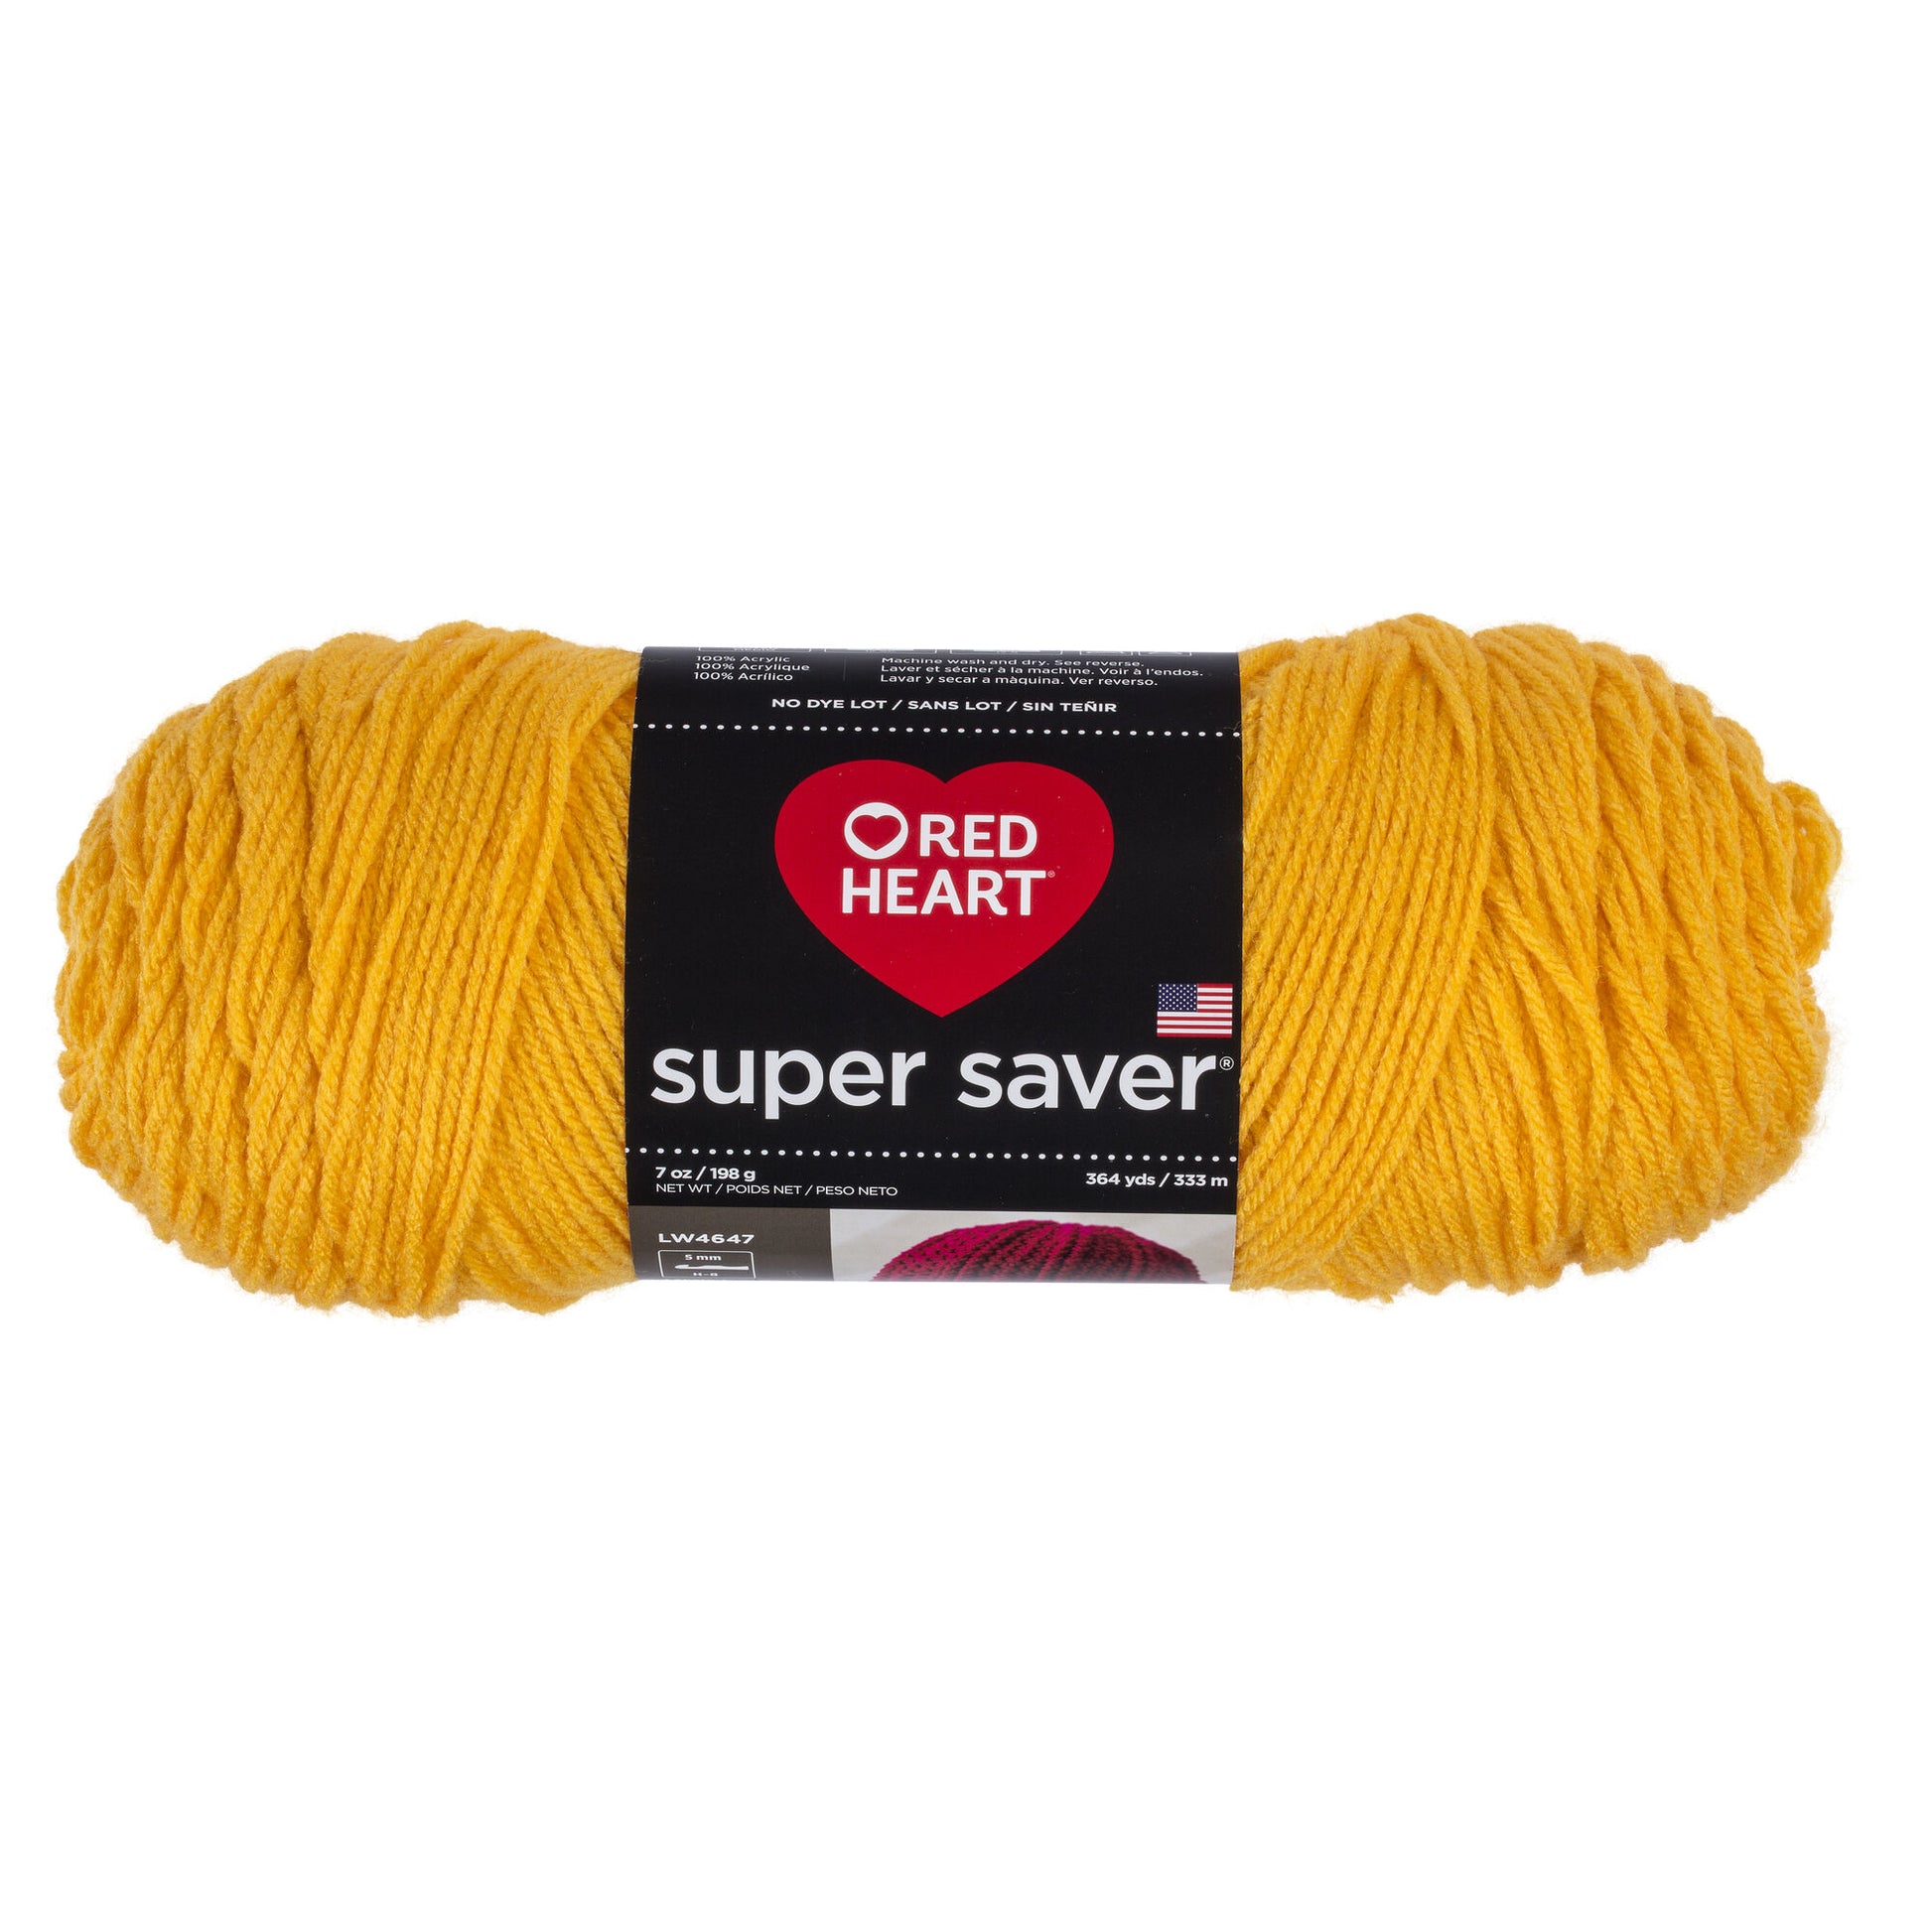 Red Heart Super Saver Yarn, Bright Yellow 0324, Medium 4 - 1 skein, 7 oz